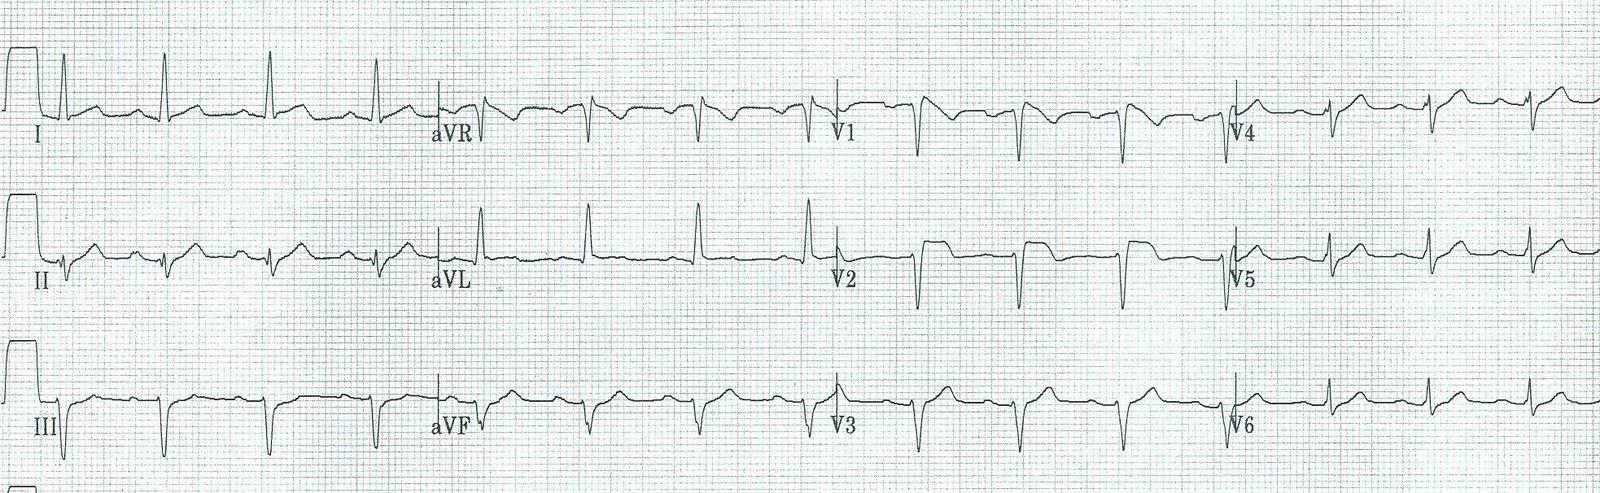 Hiperbarik merkezdeki EKG V1 de downslopping